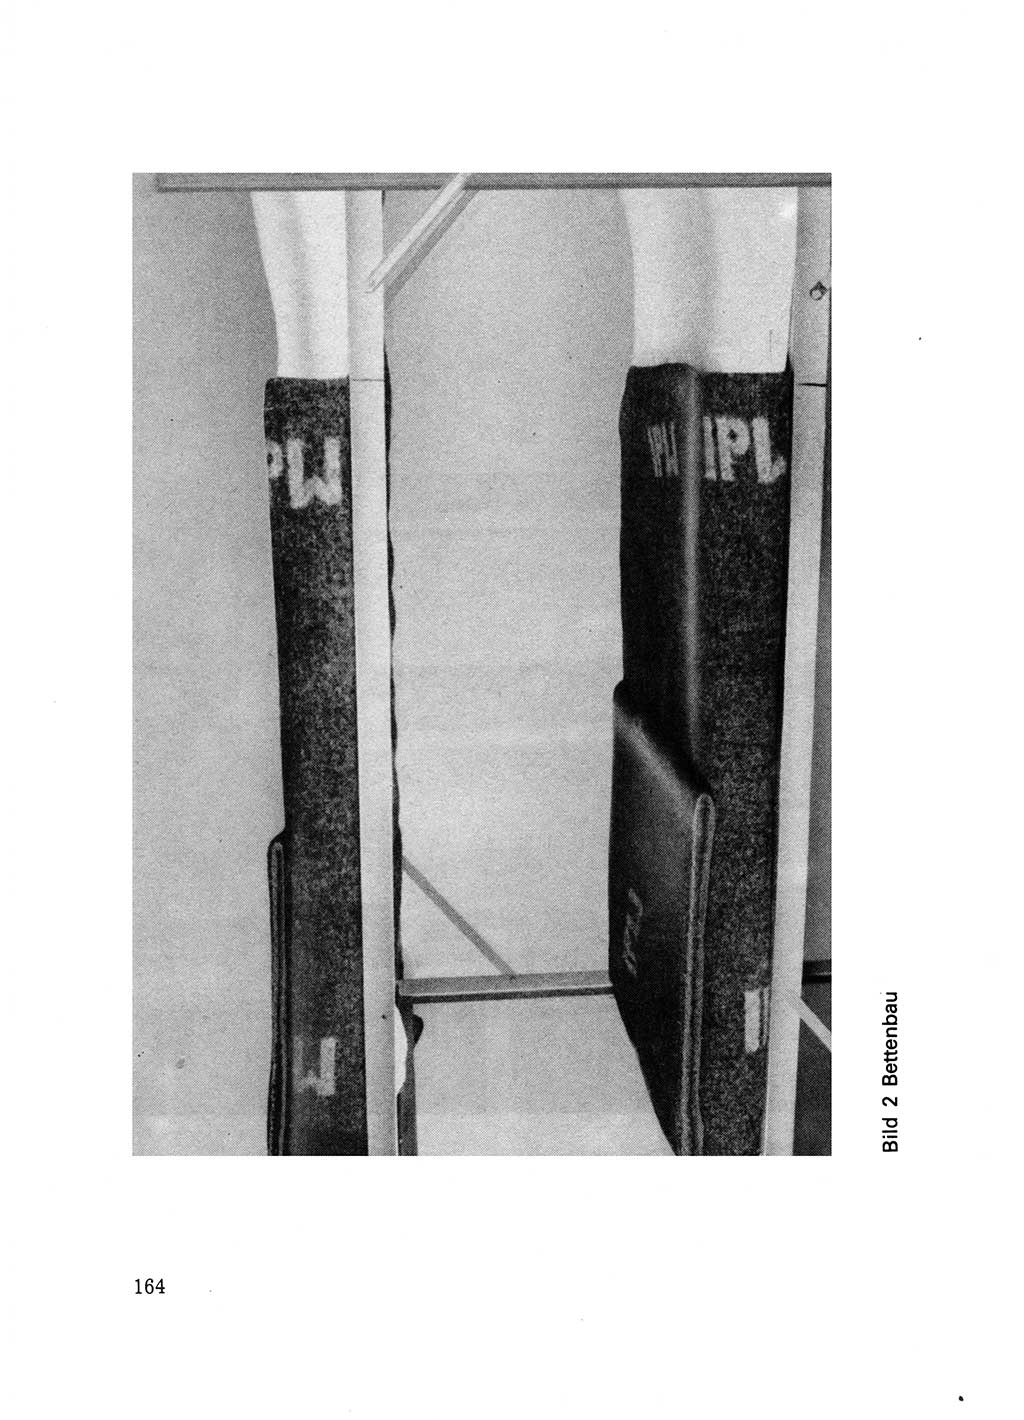 Handbuch für operative Dienste, Abteilung Strafvollzug (SV) [Ministerium des Innern (MdI) Deutsche Demokratische Republik (DDR)] 1981, Seite 164 (Hb. op. D. Abt. SV MdI DDR 1981, S. 164)